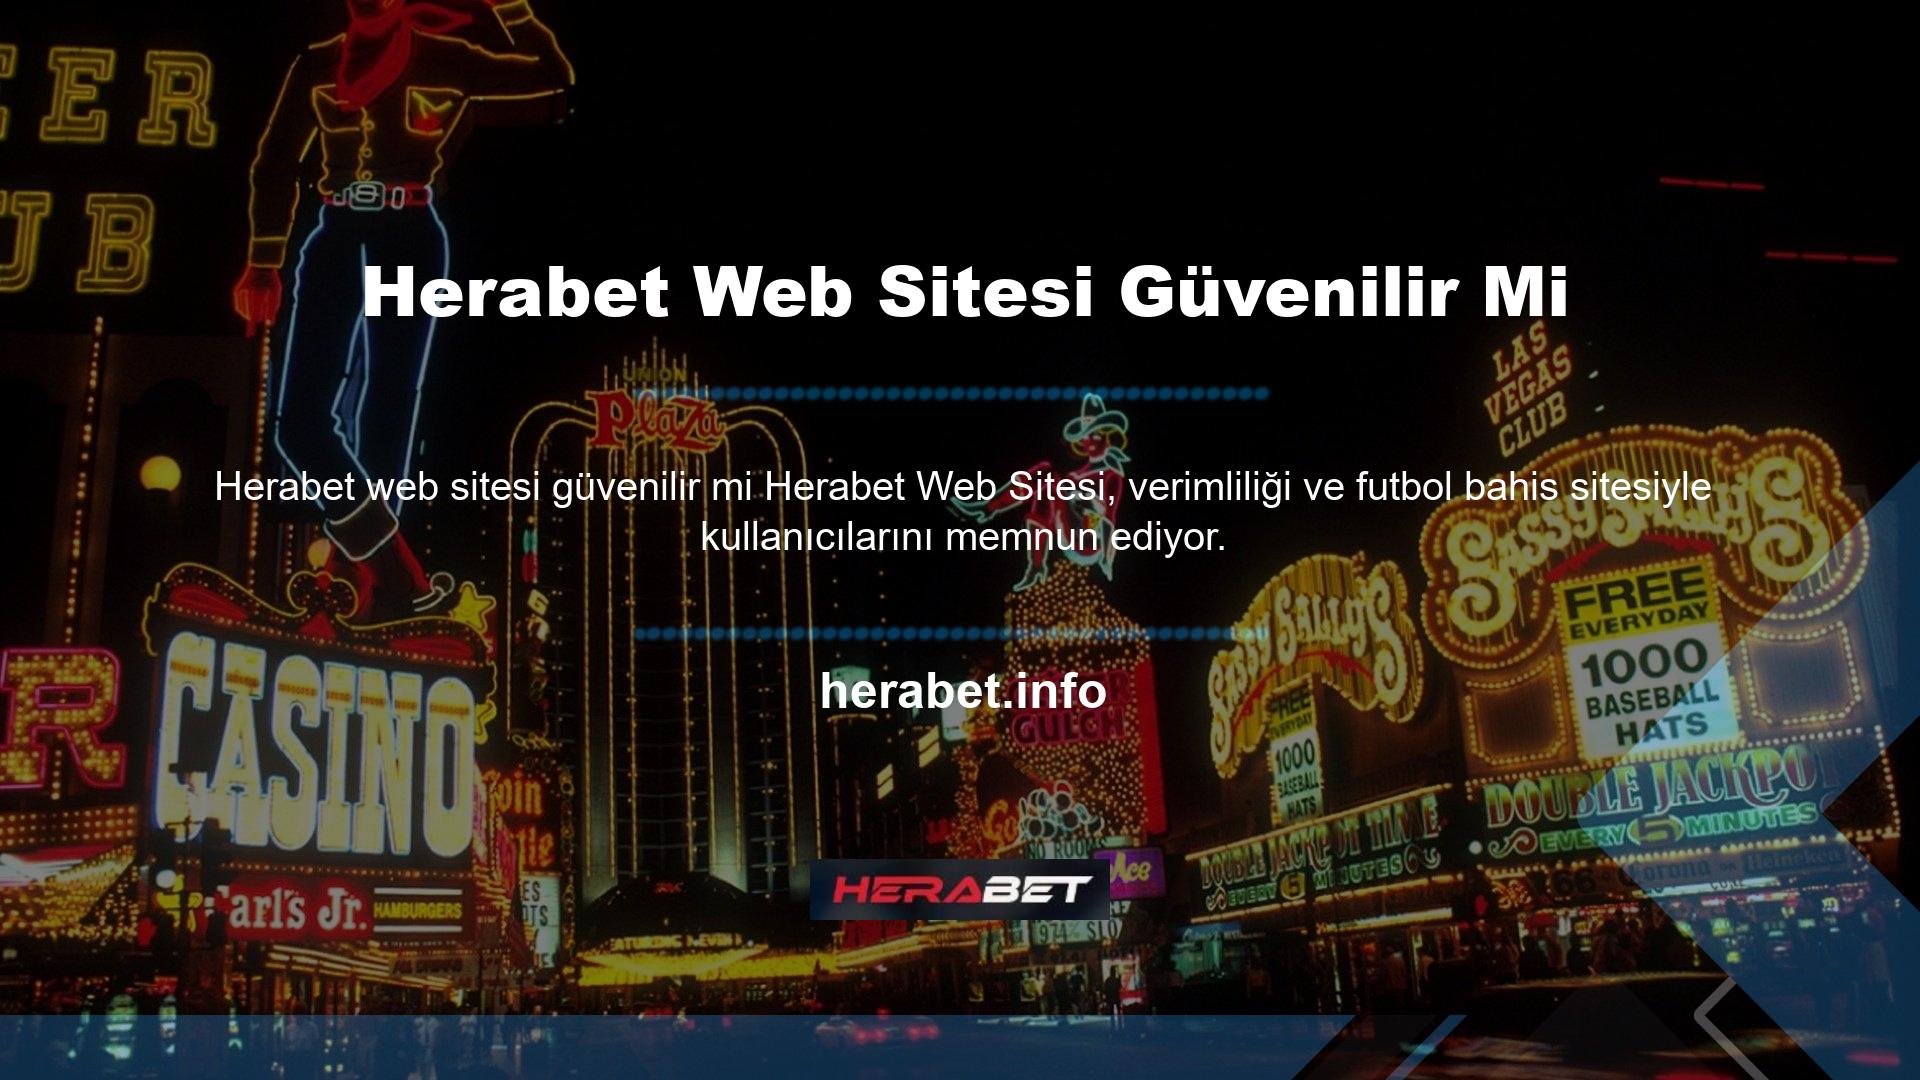 Herabet bahis sitesi geniş bir oyun yelpazesi sunmaktadır